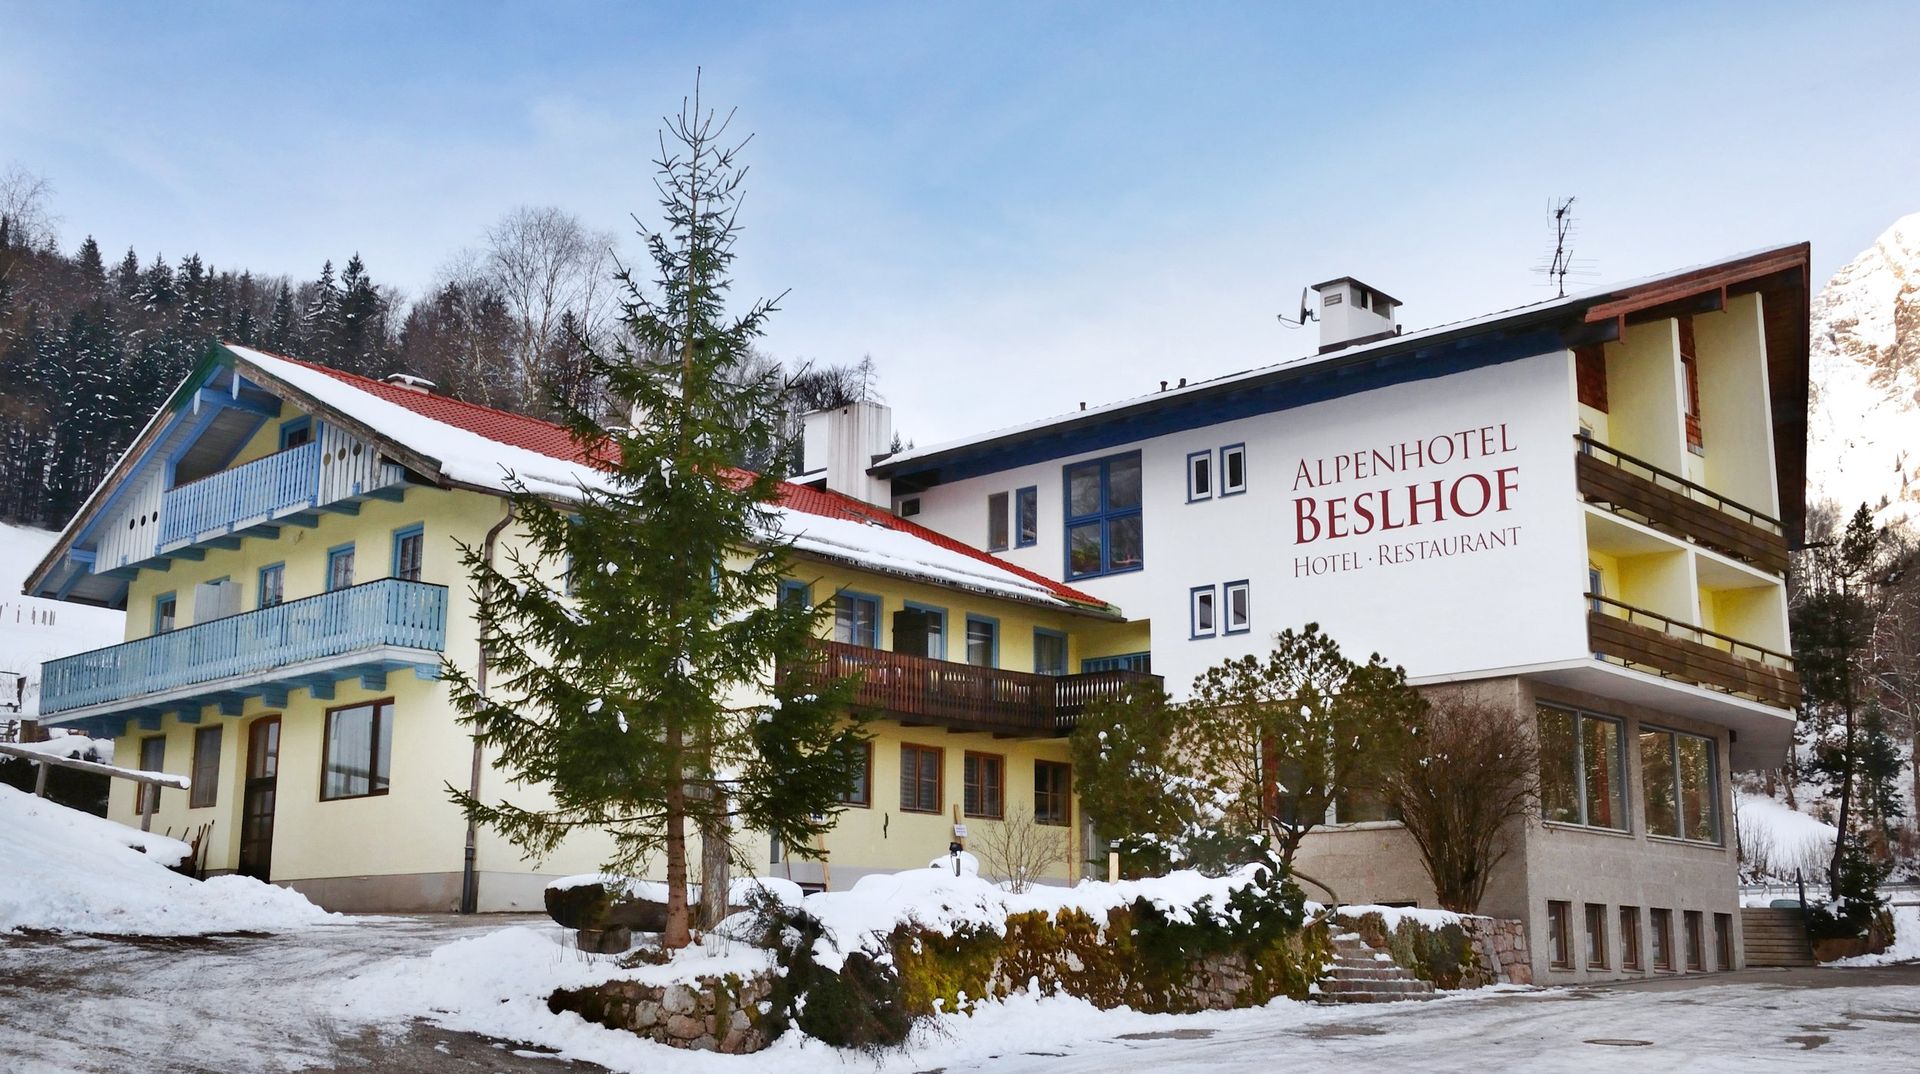 Meer info over Alpenhotel Beslhof  bij Wintertrex